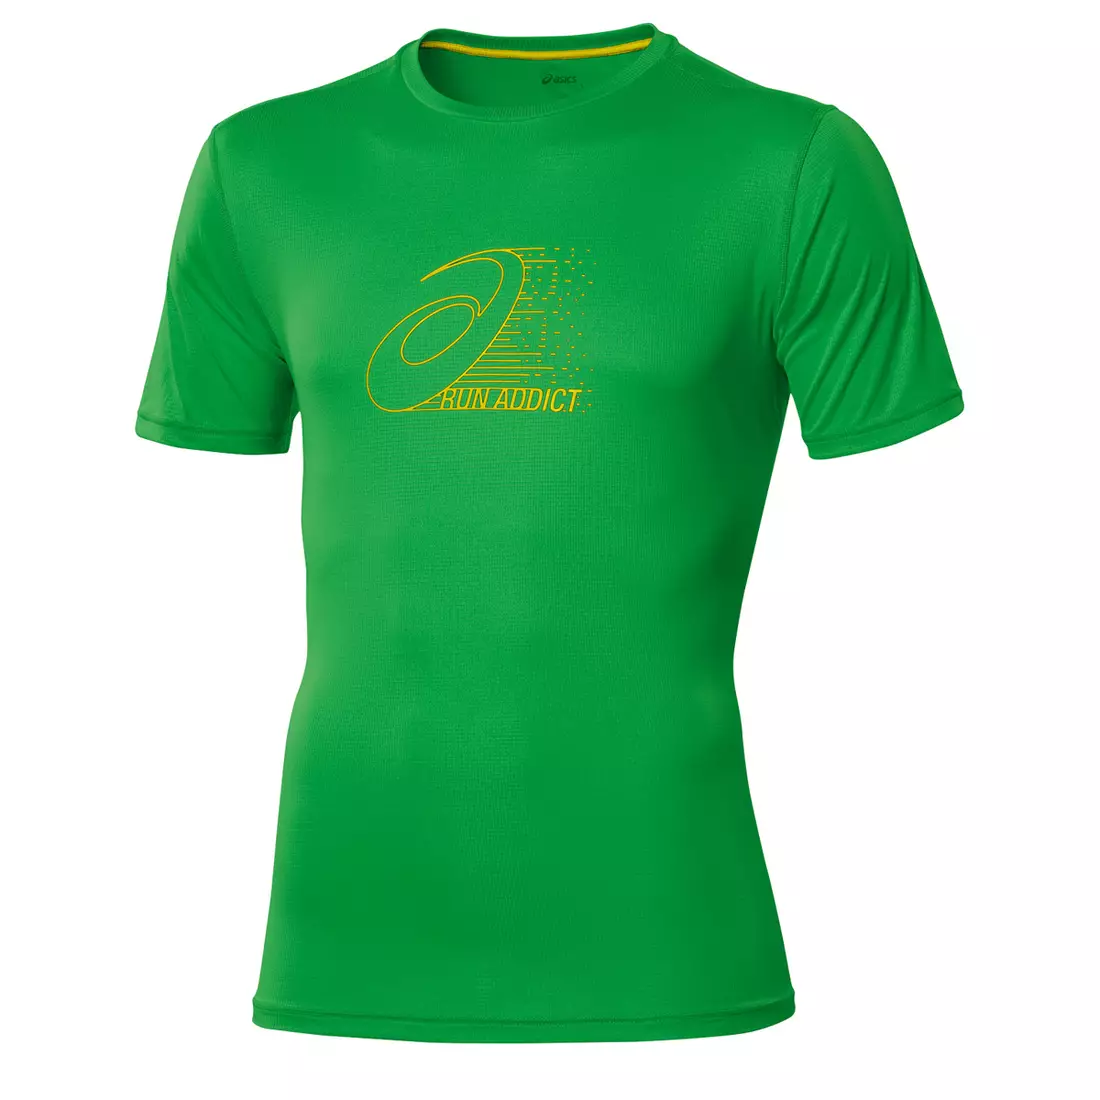 ASICS 110408-0498 GRAPHIC TOP - tricou alergare pentru bărbați, culoare: verde